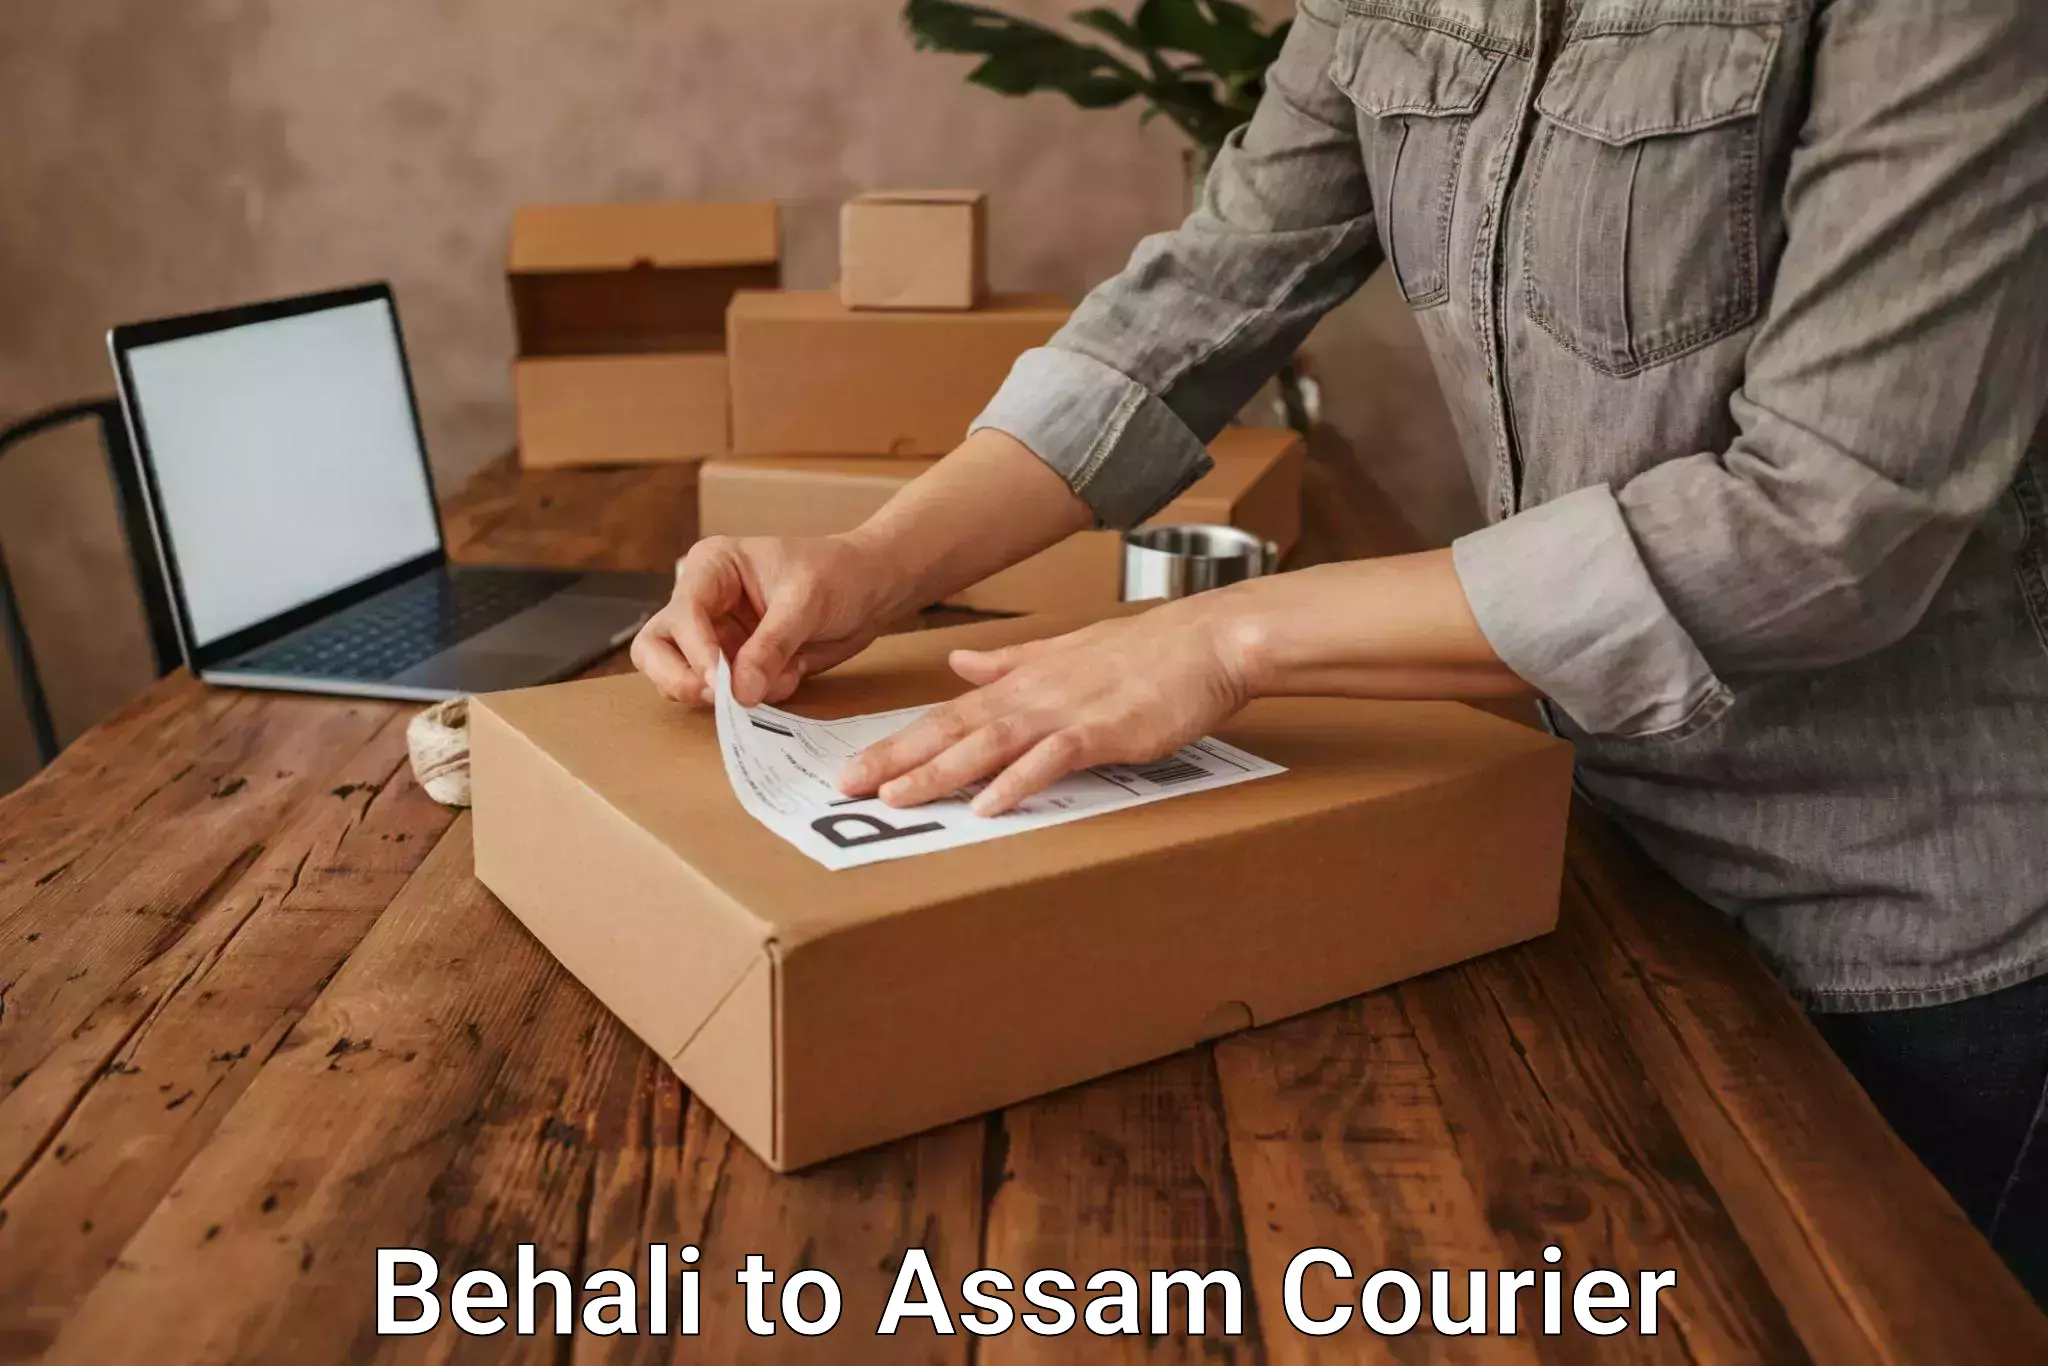 Express logistics service Behali to Assam